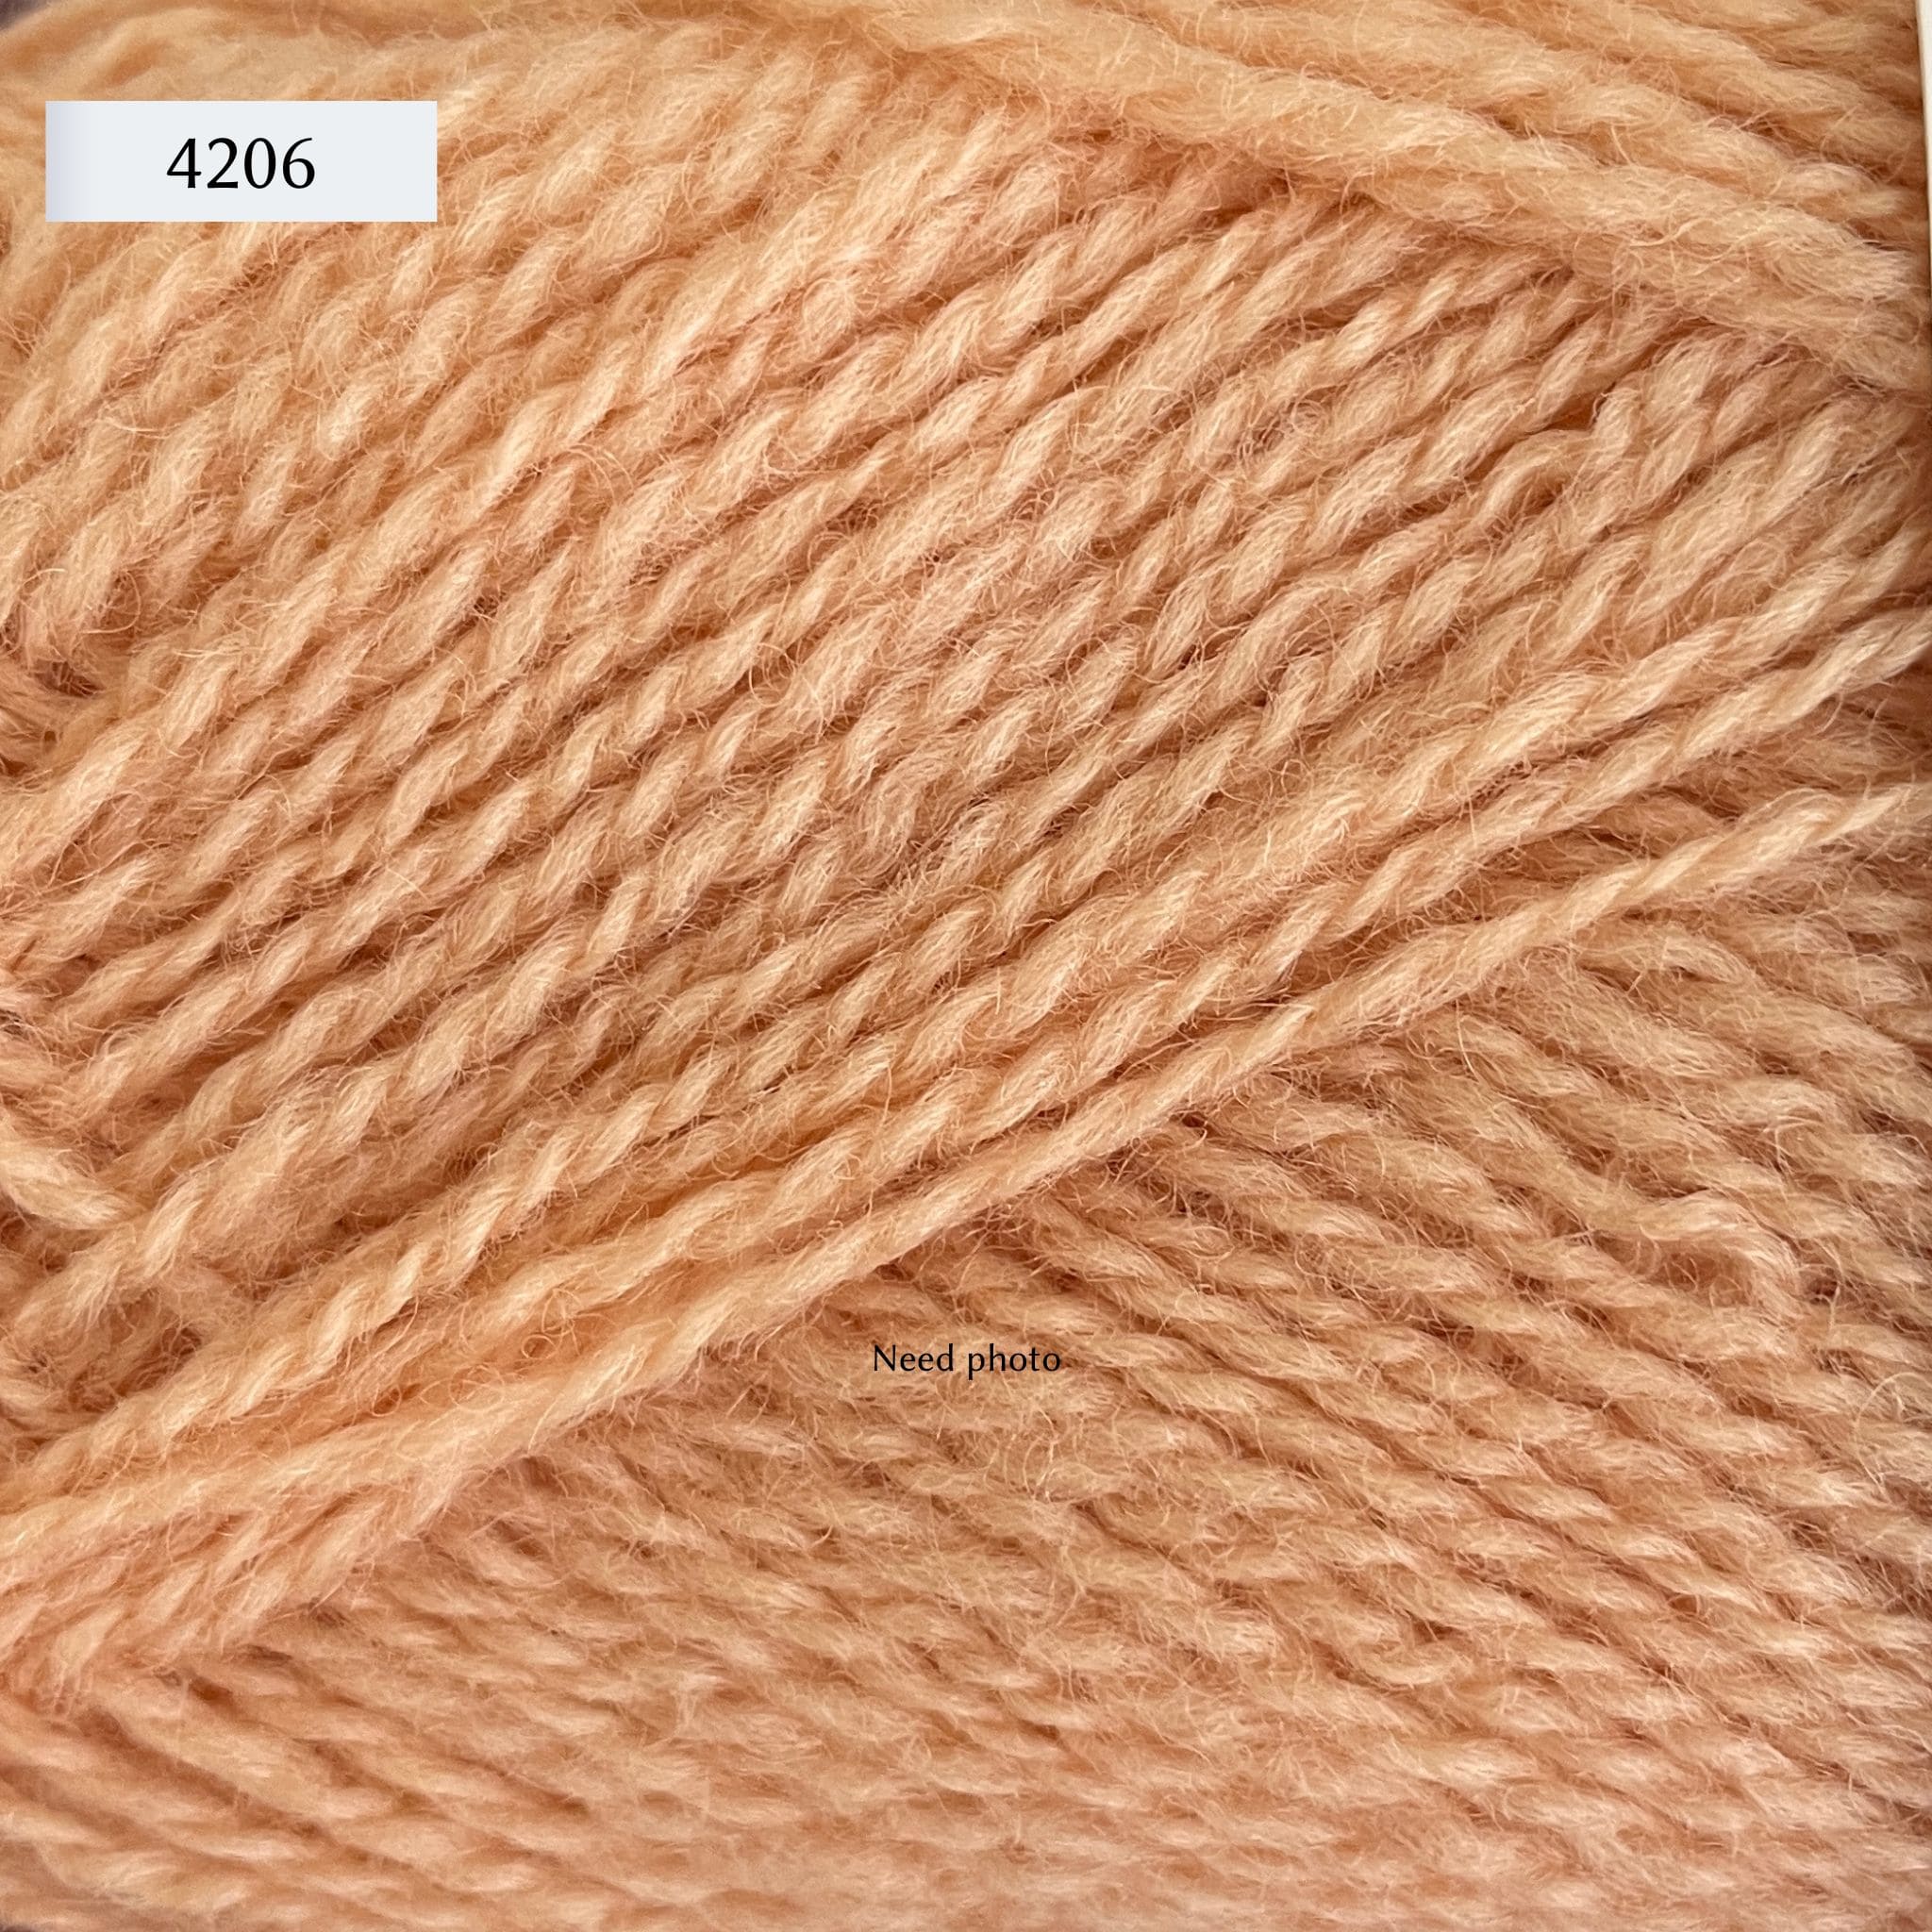 Rauma Finullgarn, a fingering/sport weight yarn, in color 4206, a light peach